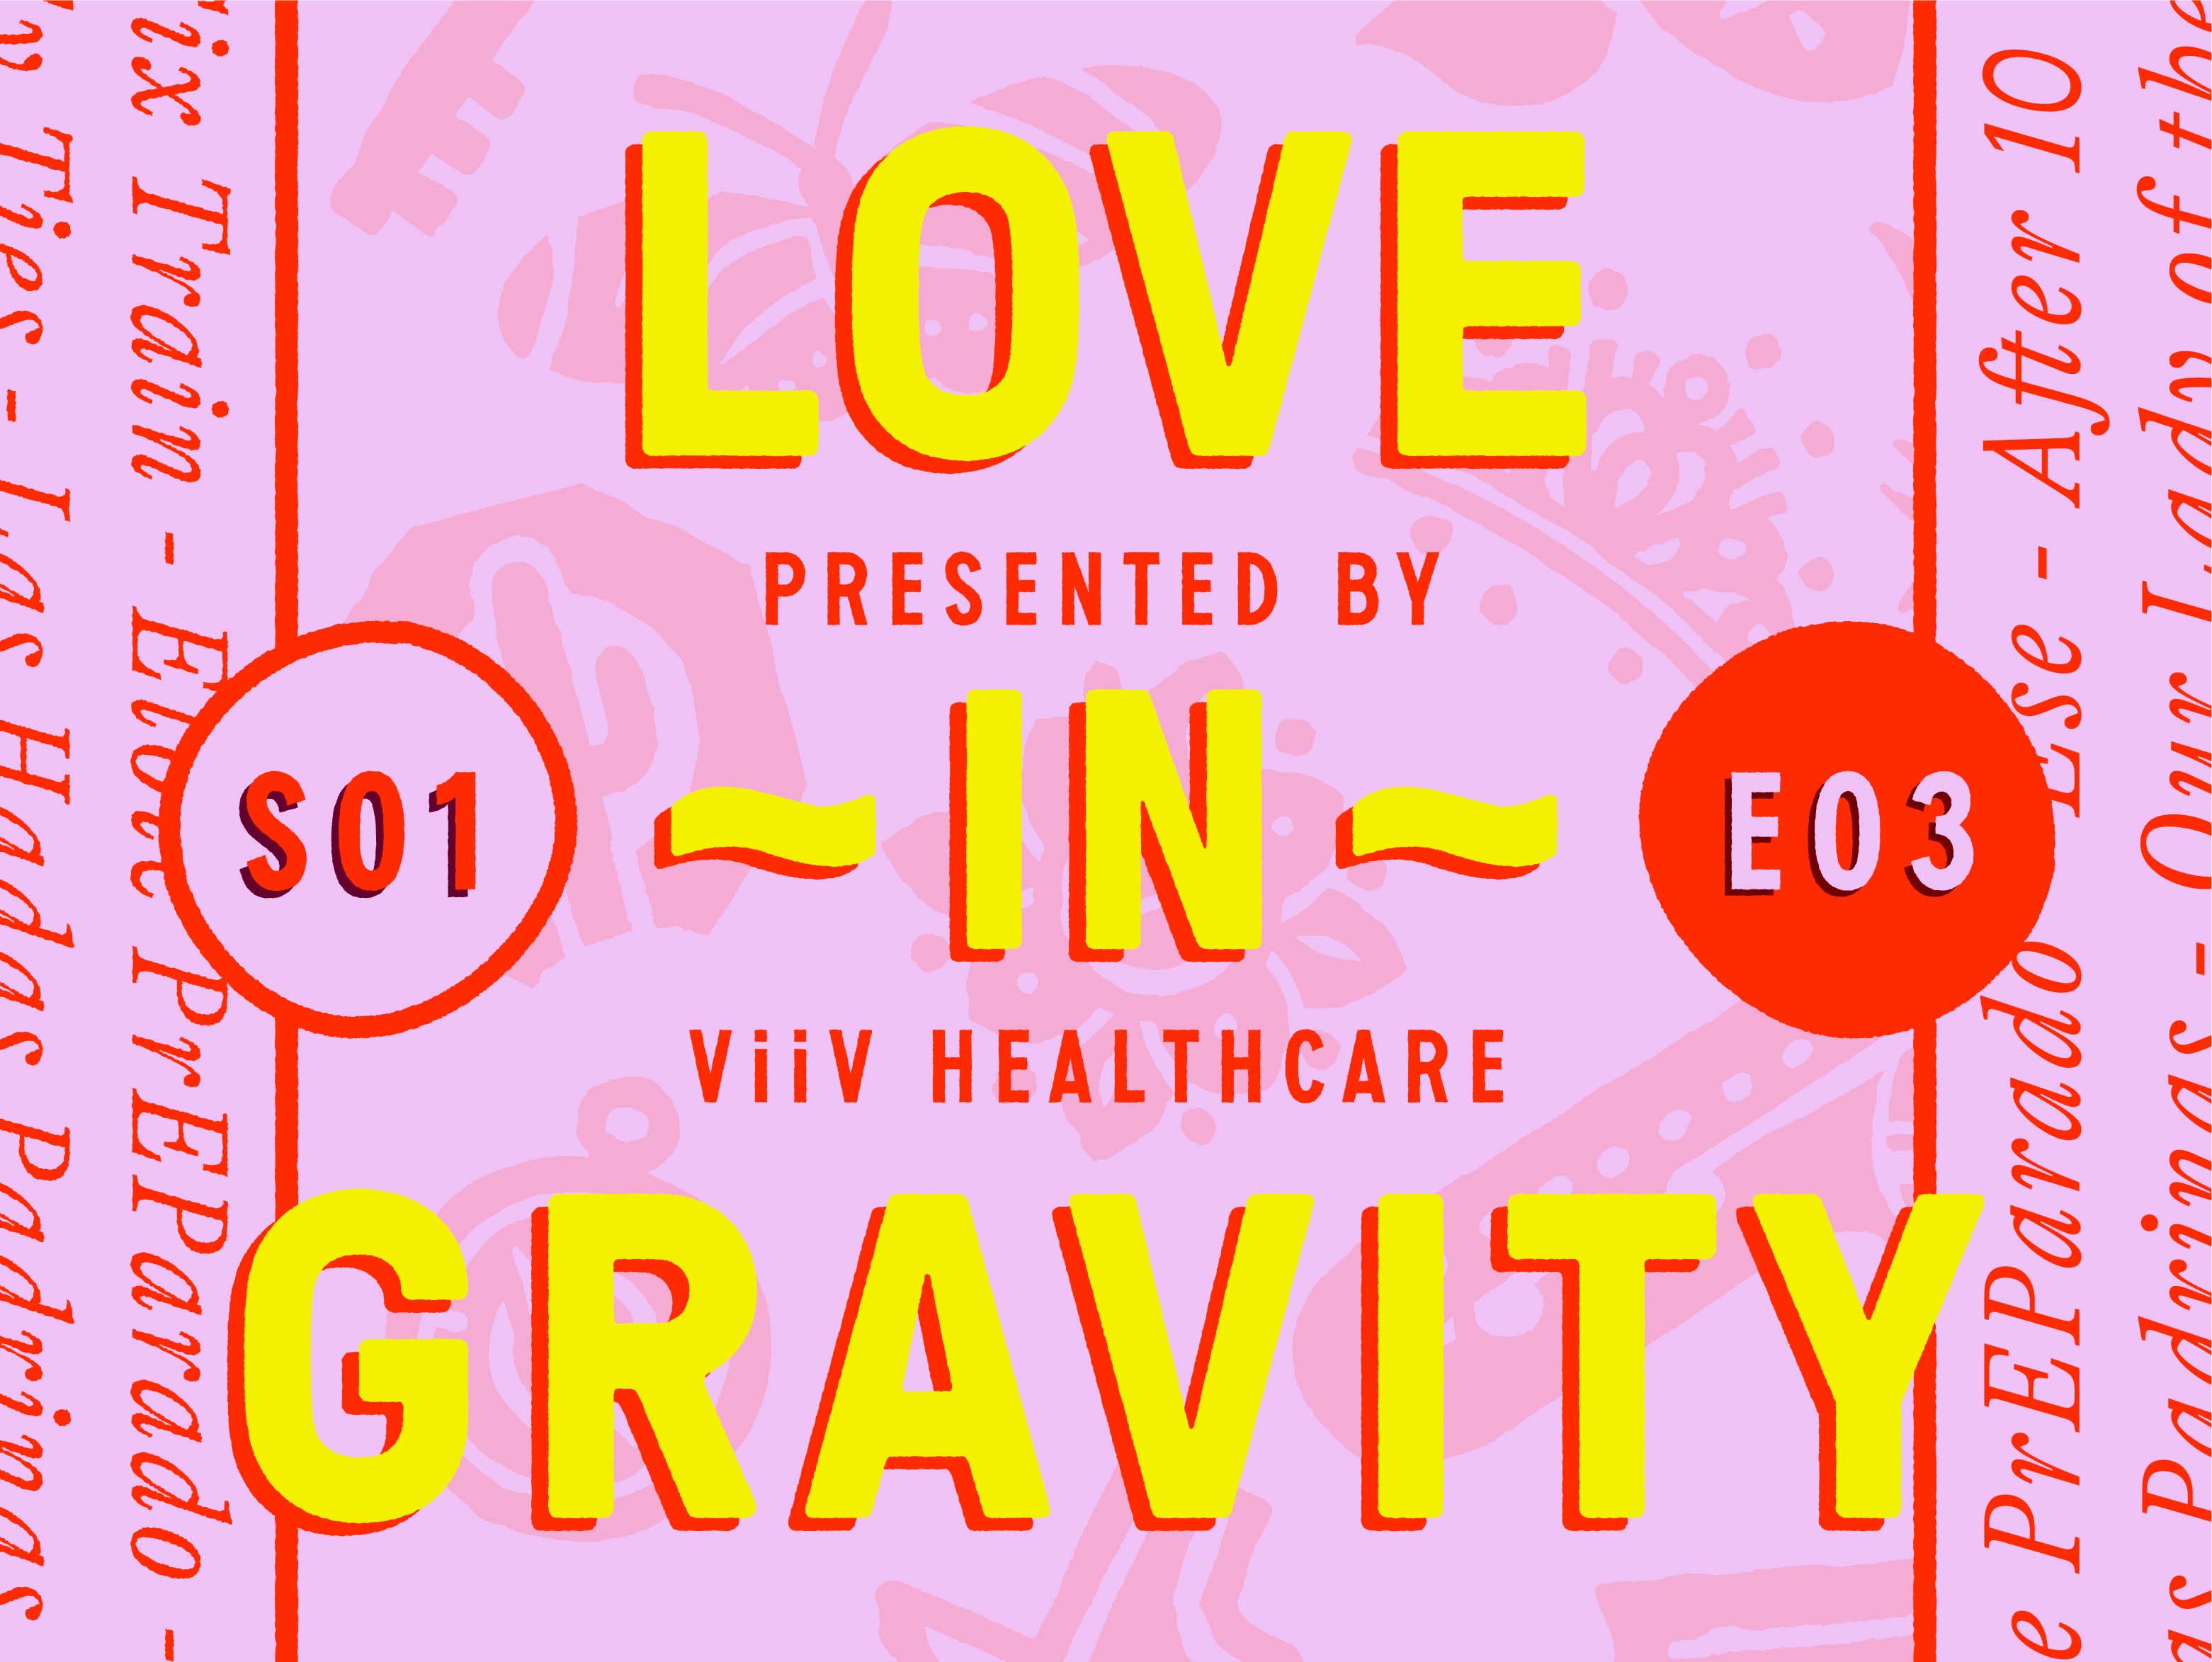 Love in gravity S03